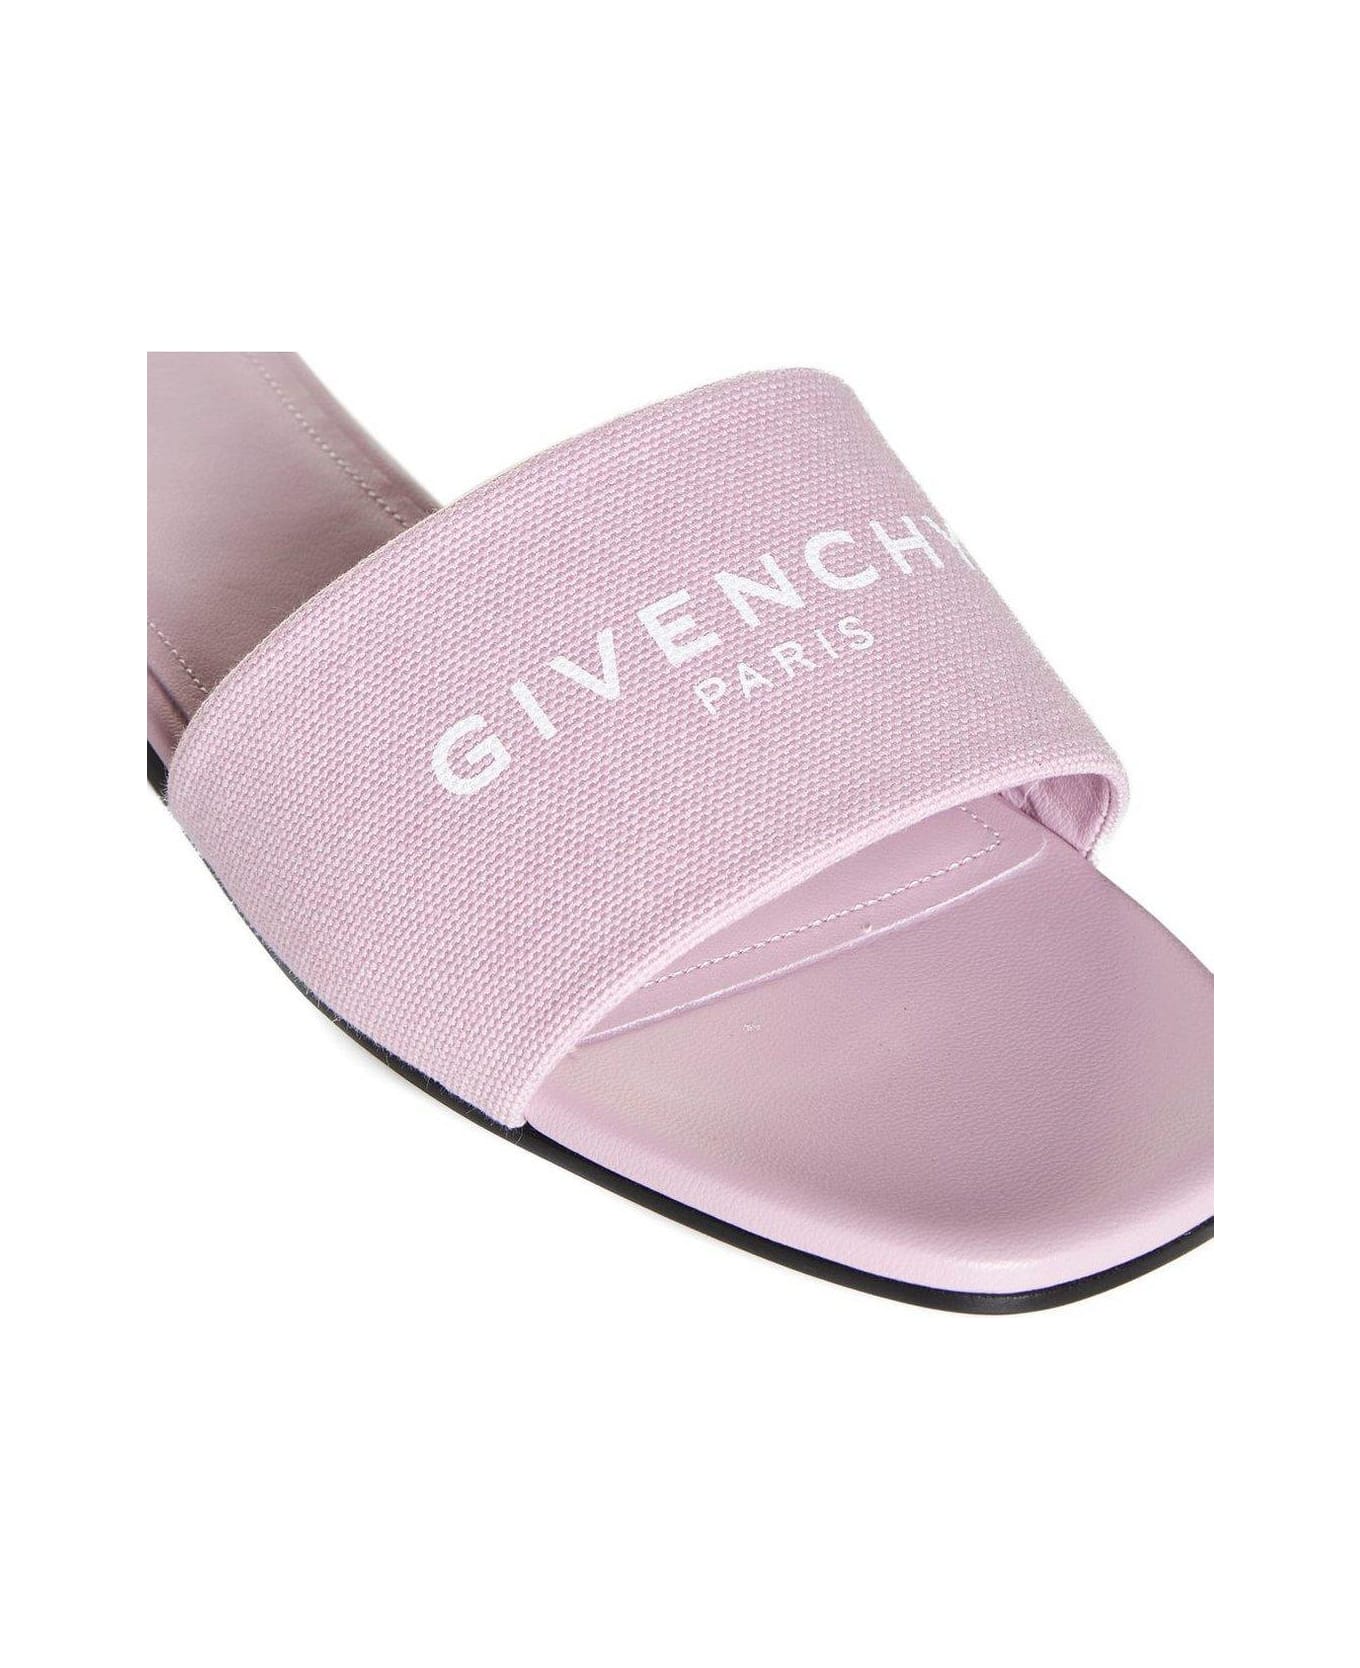 Givenchy Logo Printed Slides - Pink